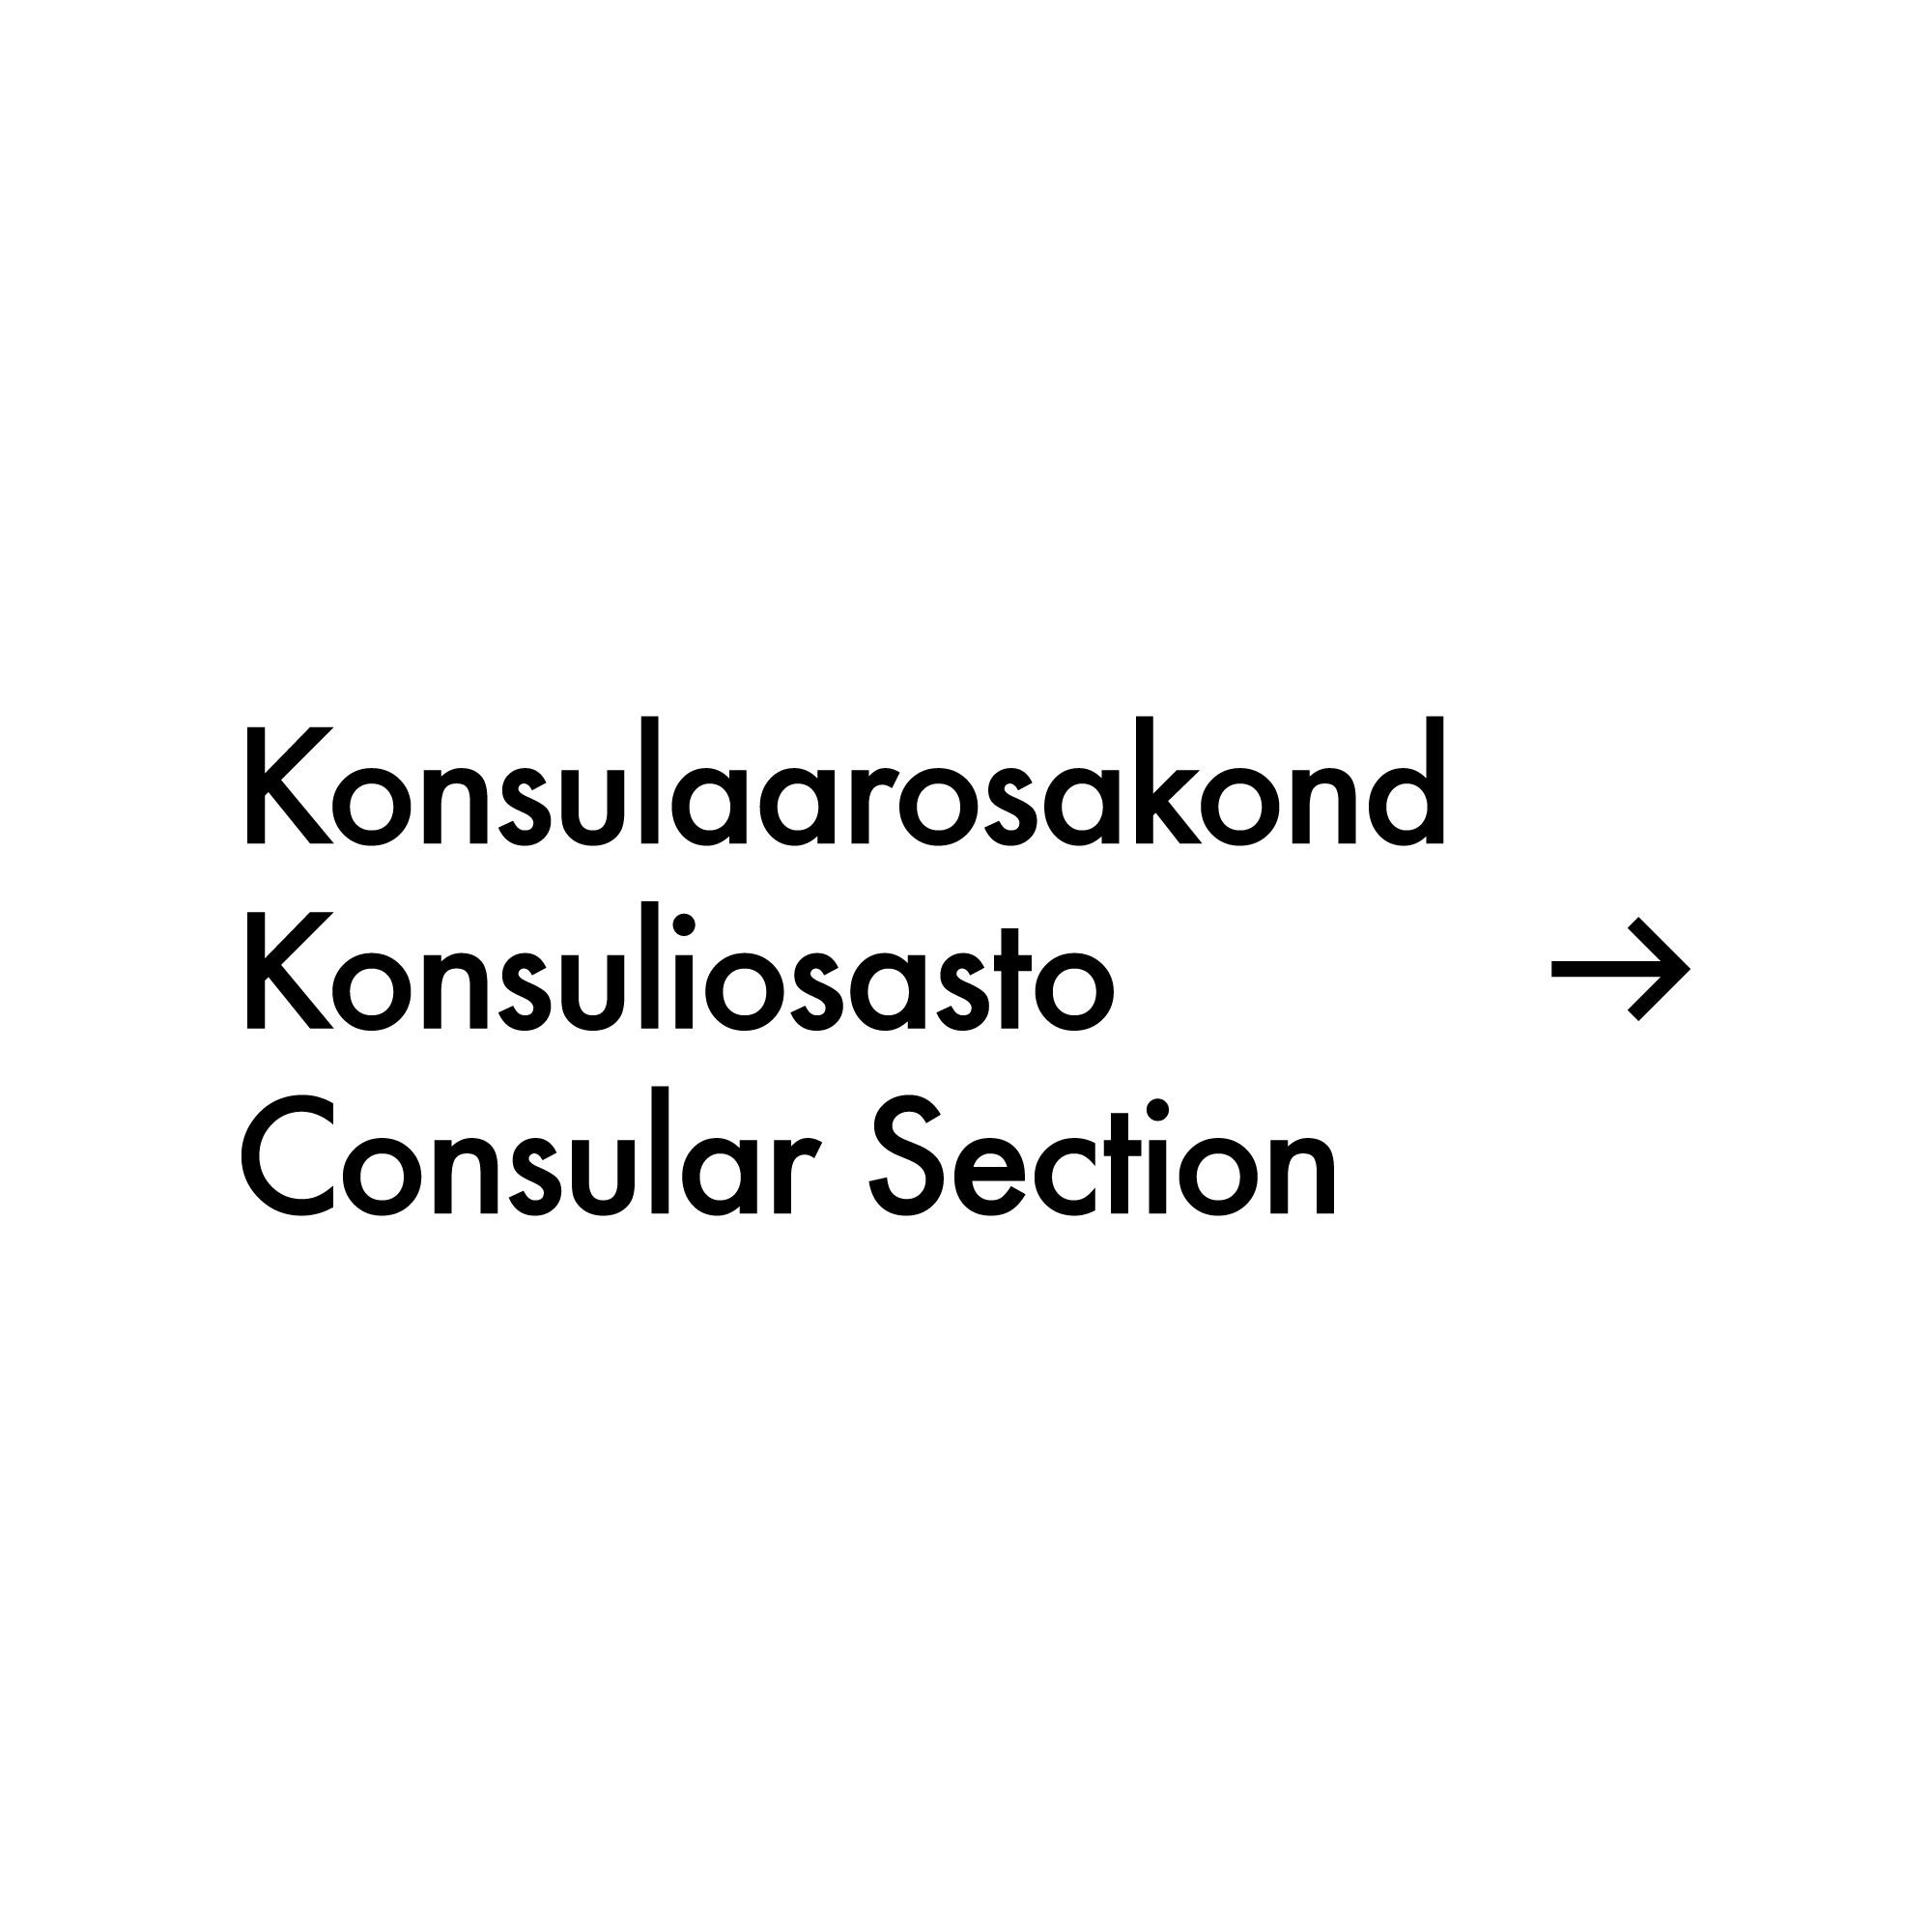 saatkond_pikt_konsulaar